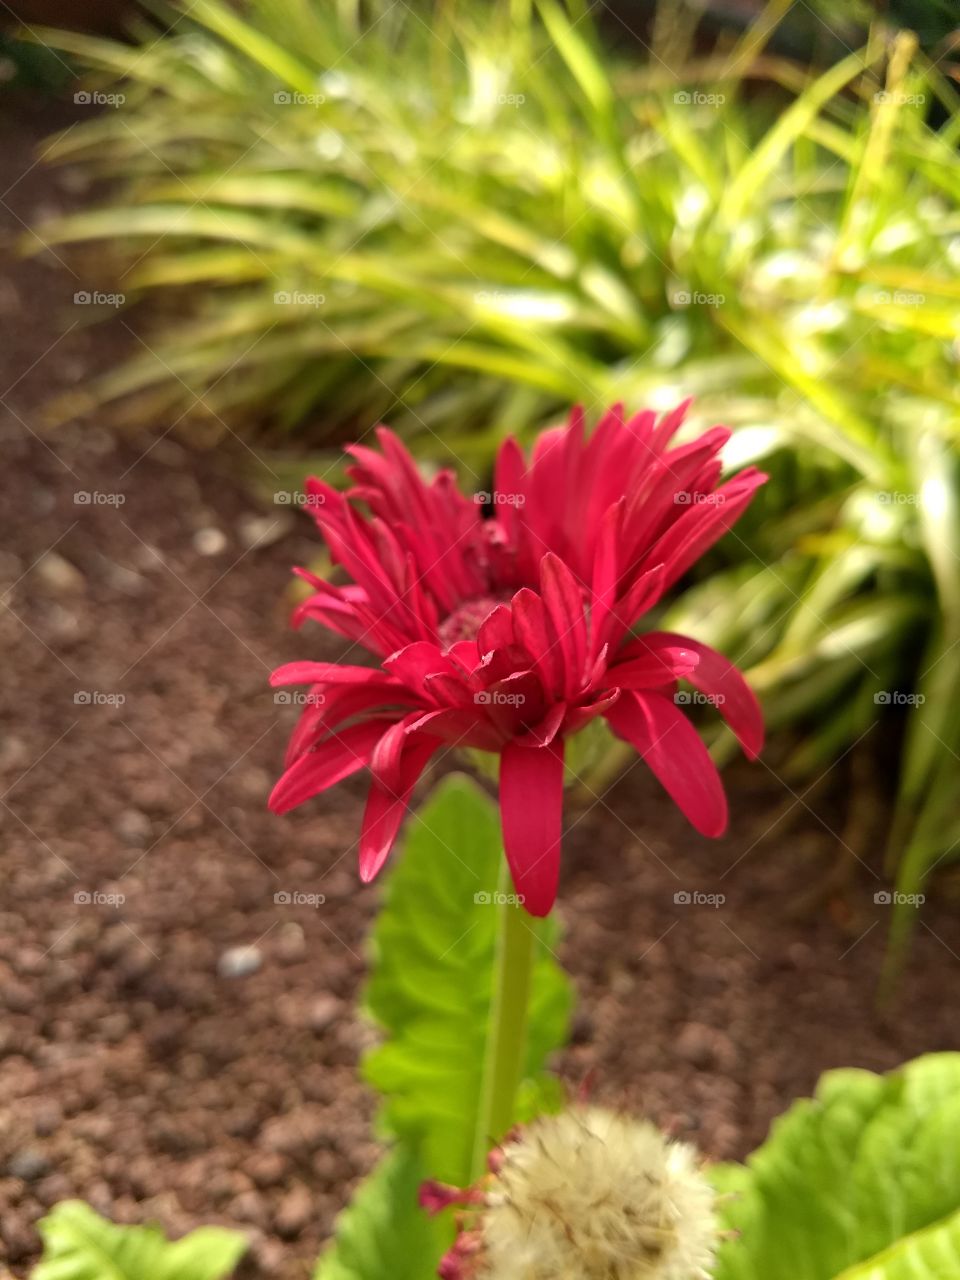 aquí una flor